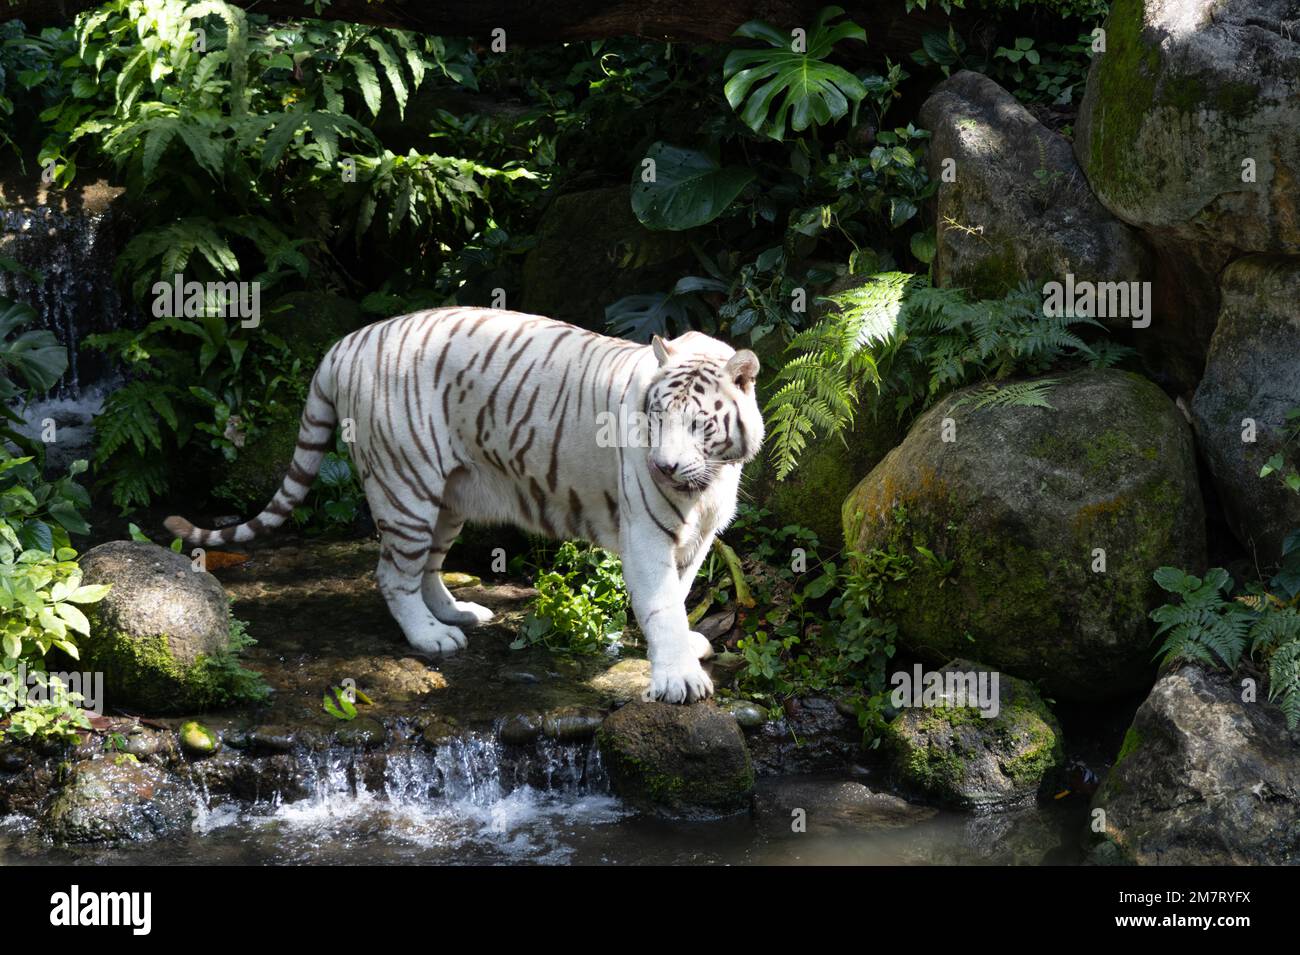 La tigre bengala (Panthera tigris tigris) è una sottospecie di tigre originaria del subcontinente indiano. Foto Stock